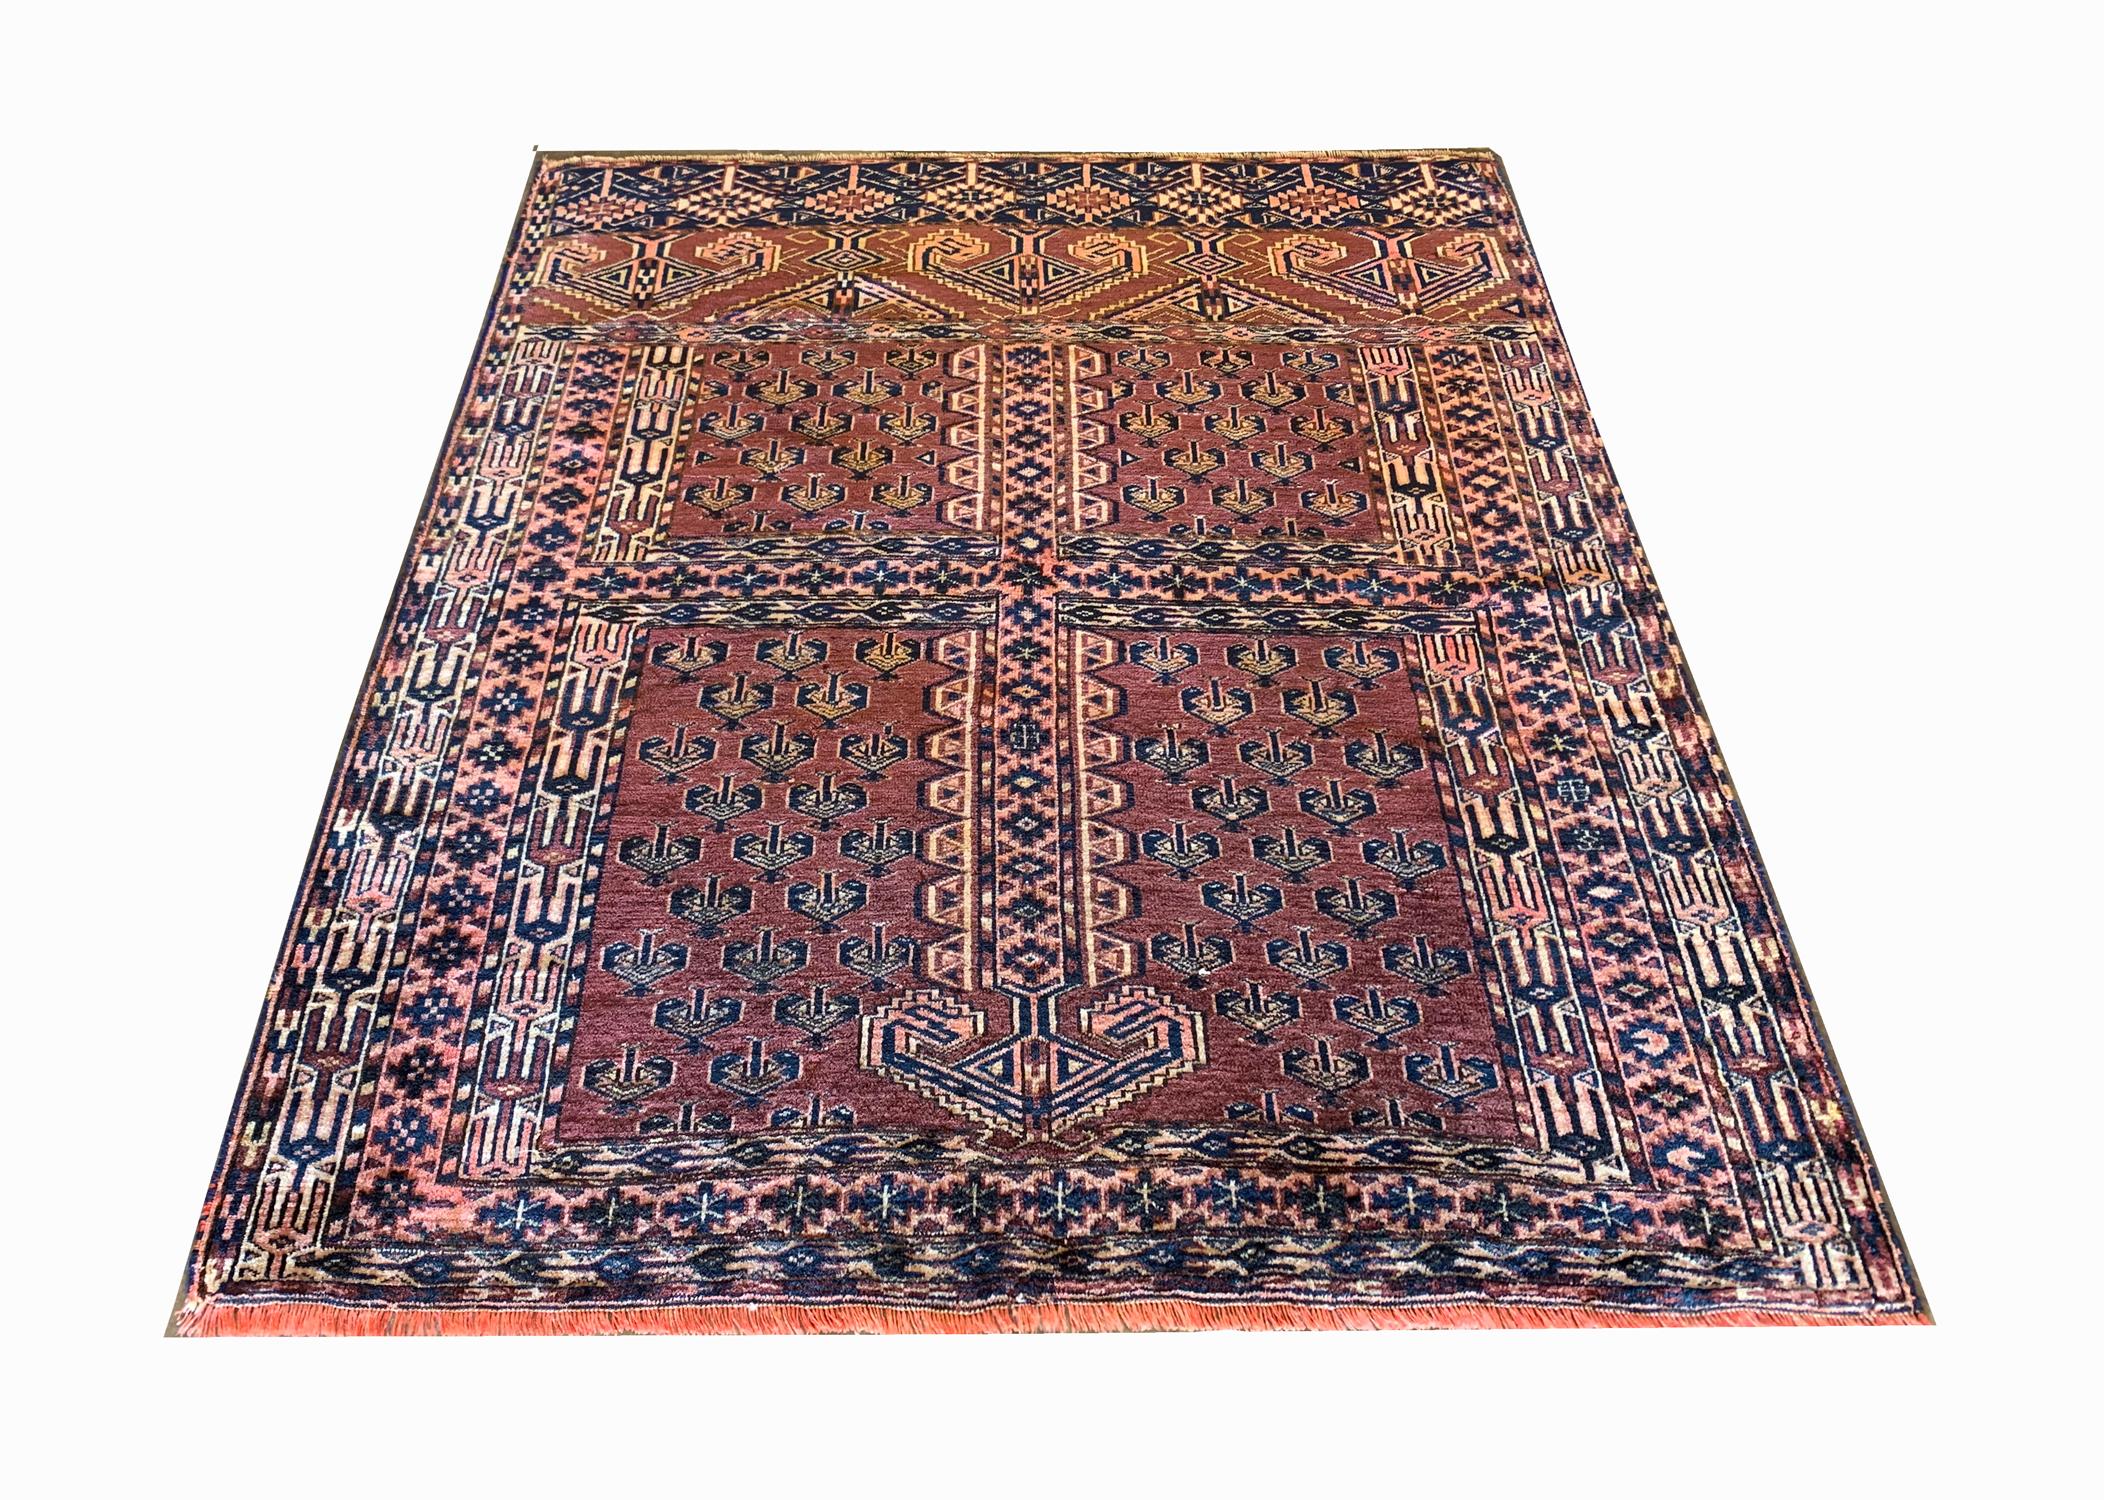 Dieser elegante, handgewebte, antike turkmenische Teppich wurde in den 1880er Jahren mit Raffinesse gewebt. Es zeichnet sich durch ein hochdekoratives zentrales Muster aus, das auf einem rostfarbenen Hintergrund mit blauen, beigen und orangefarbenen